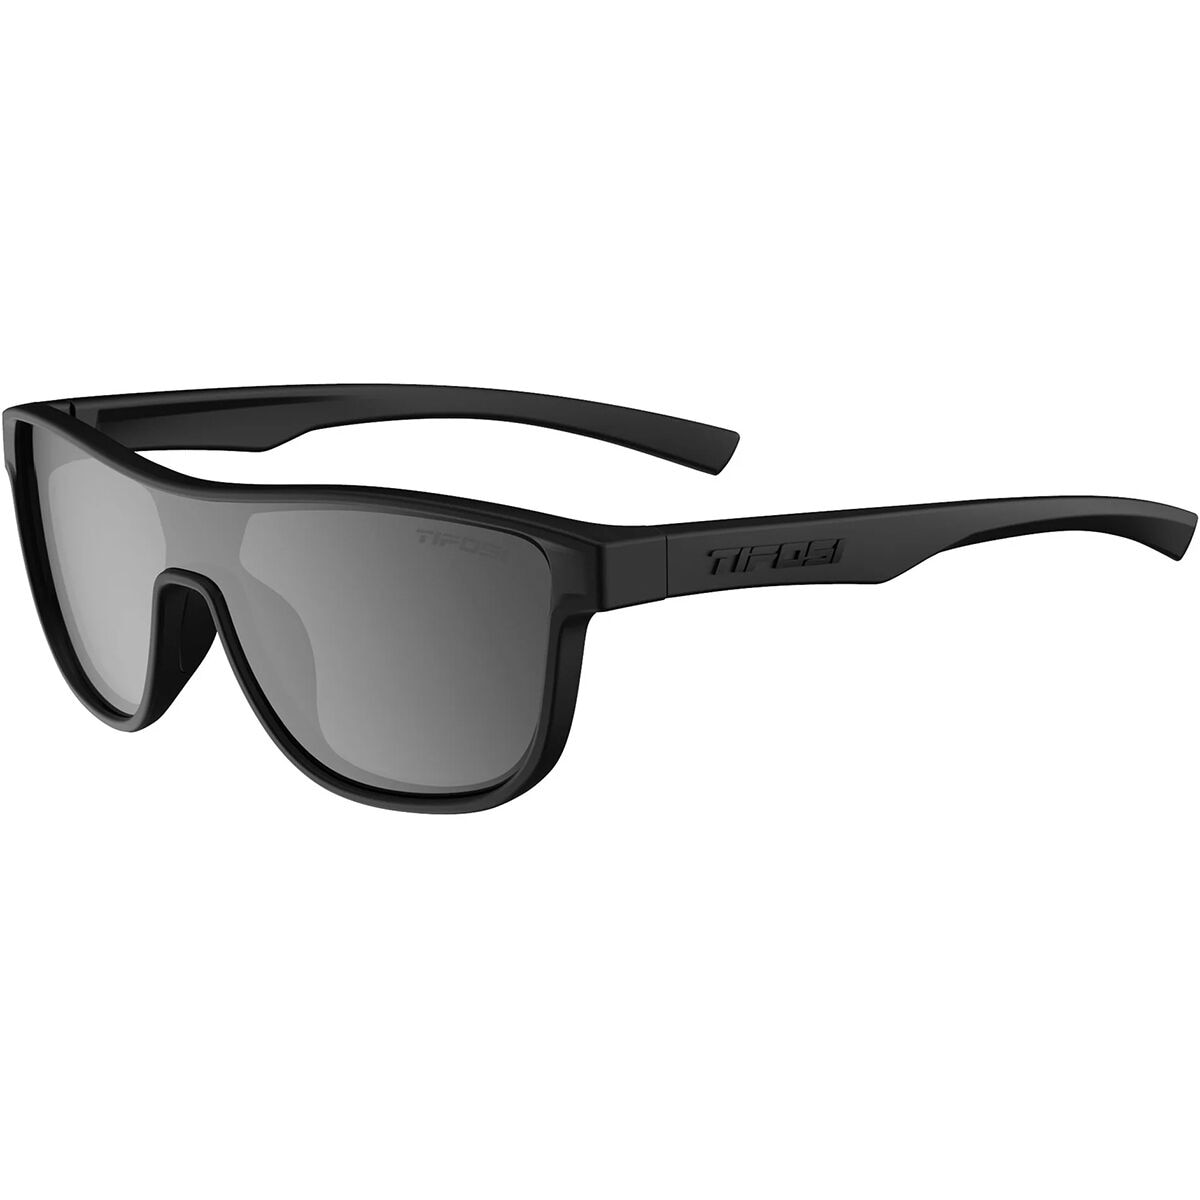 Sizzle Sunglasses Tifosi Optics